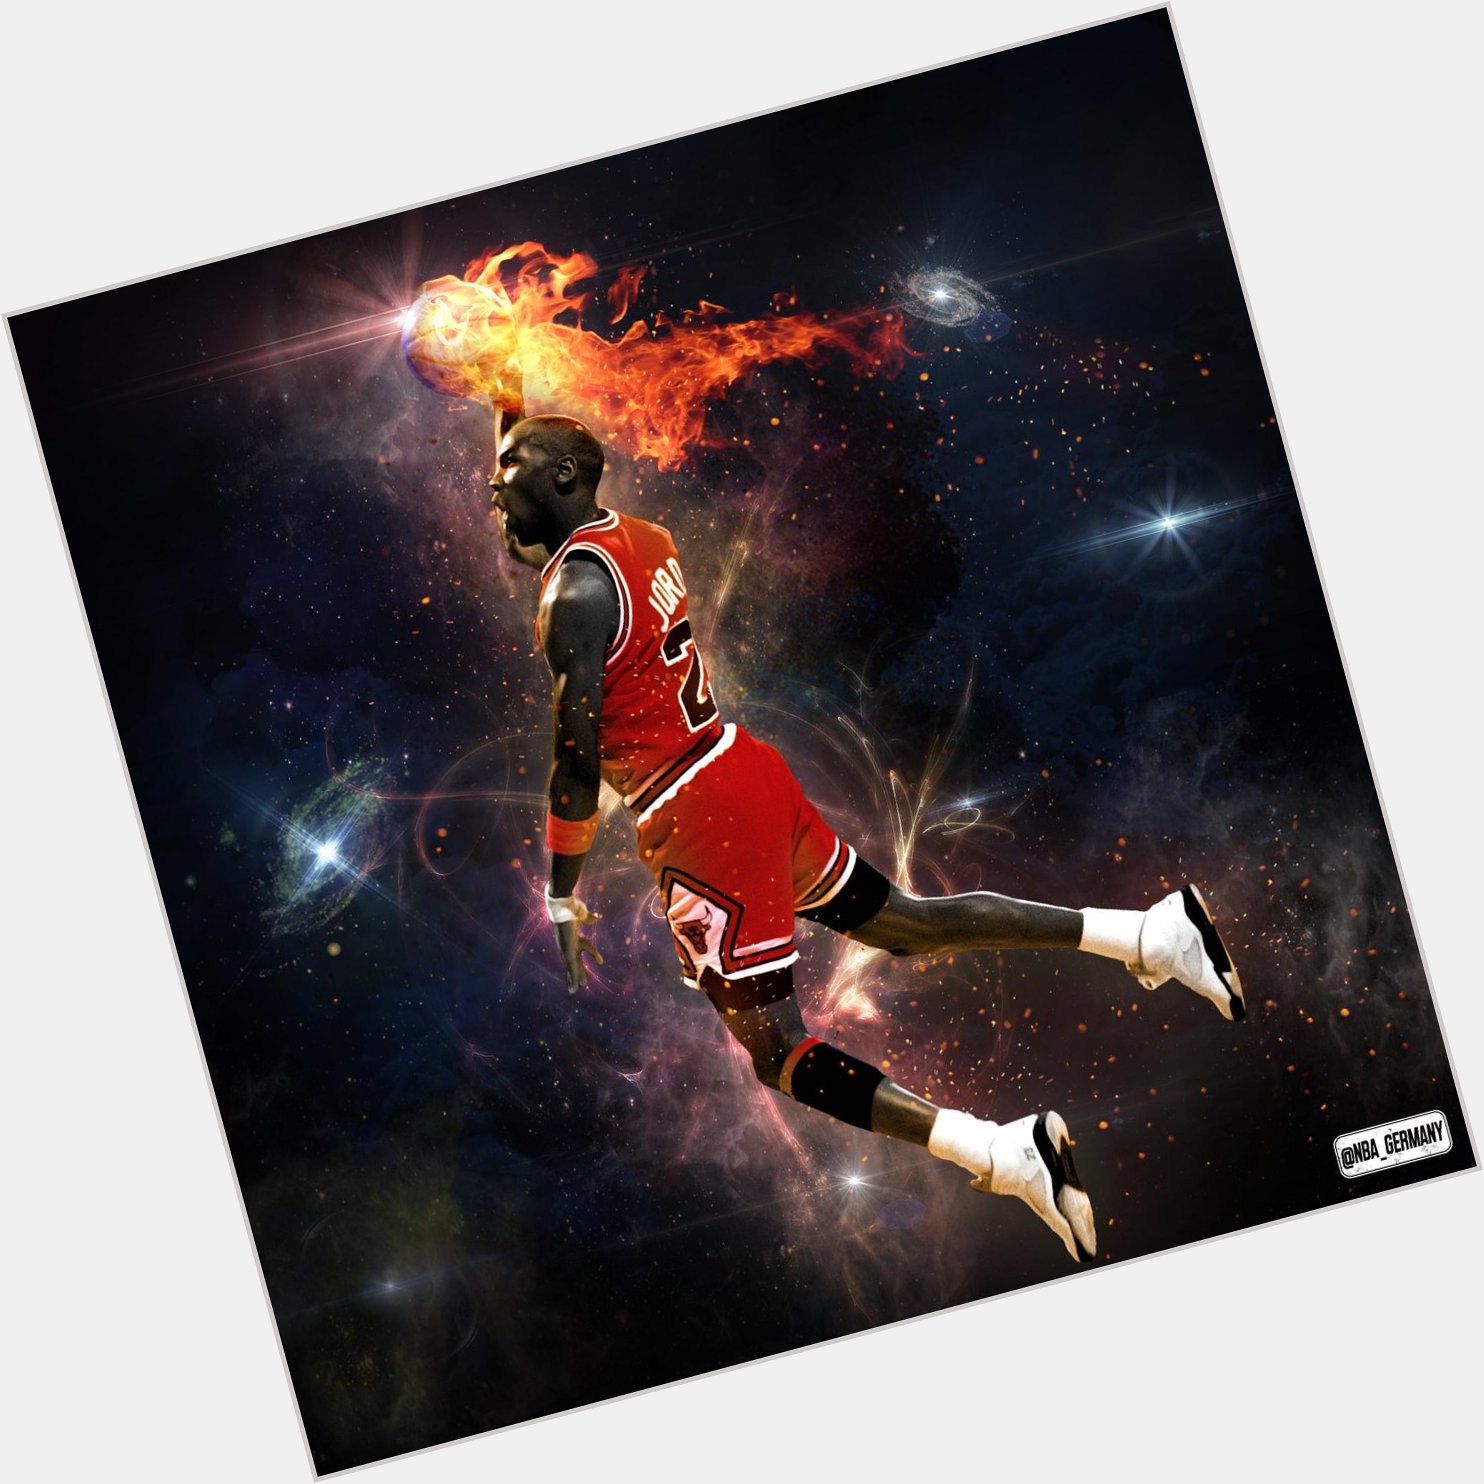 Happy Birthday, Michael Jordan! His Airness wird heute 52 Jahre alt! 